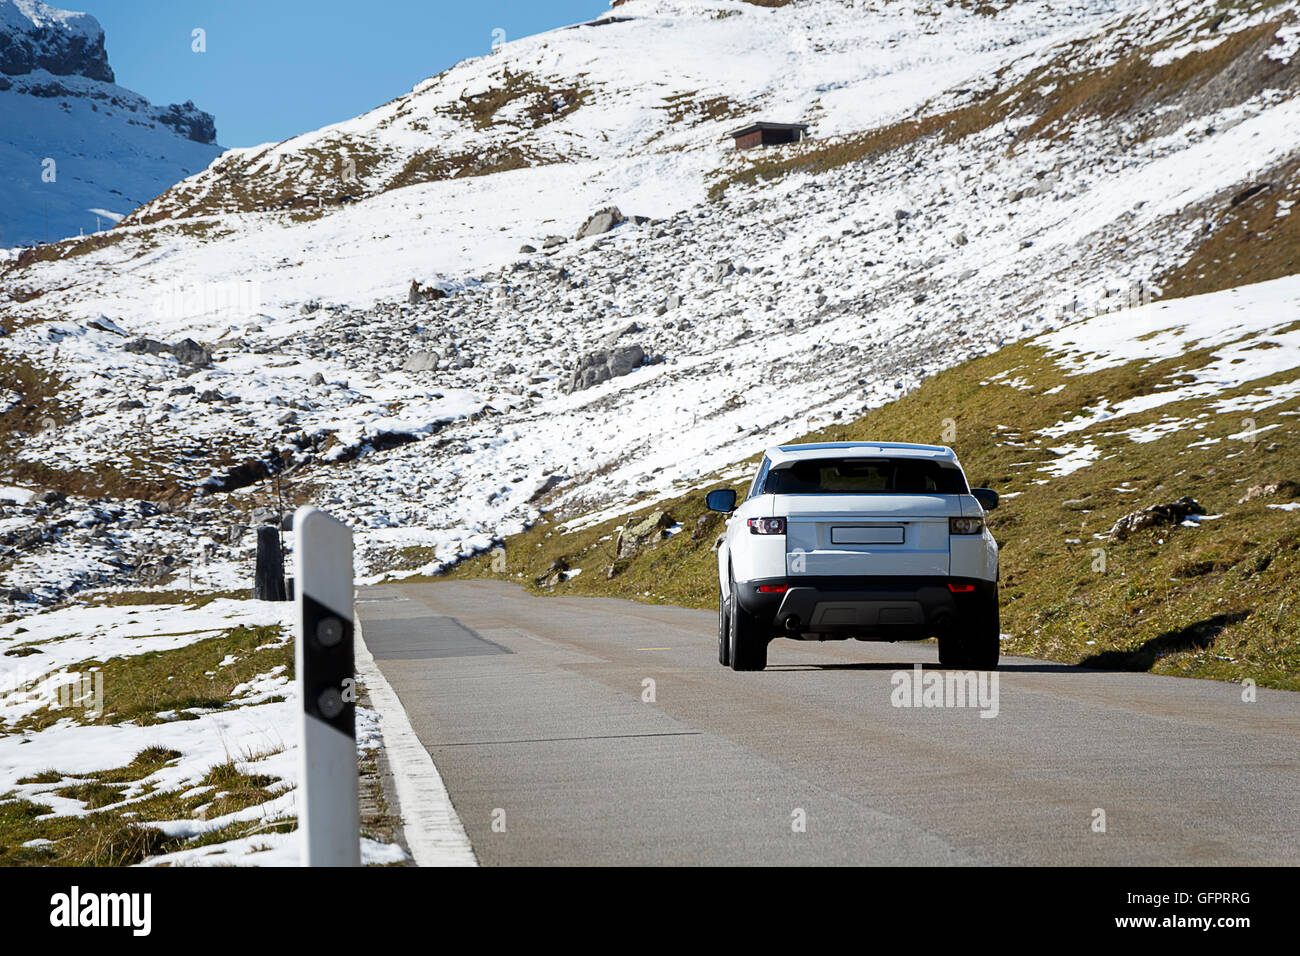 Ein Auto auf einer Bergstraße könnte verwendet werden, um eine treibende Abenteuer zeigen / Urlaub Stockfoto